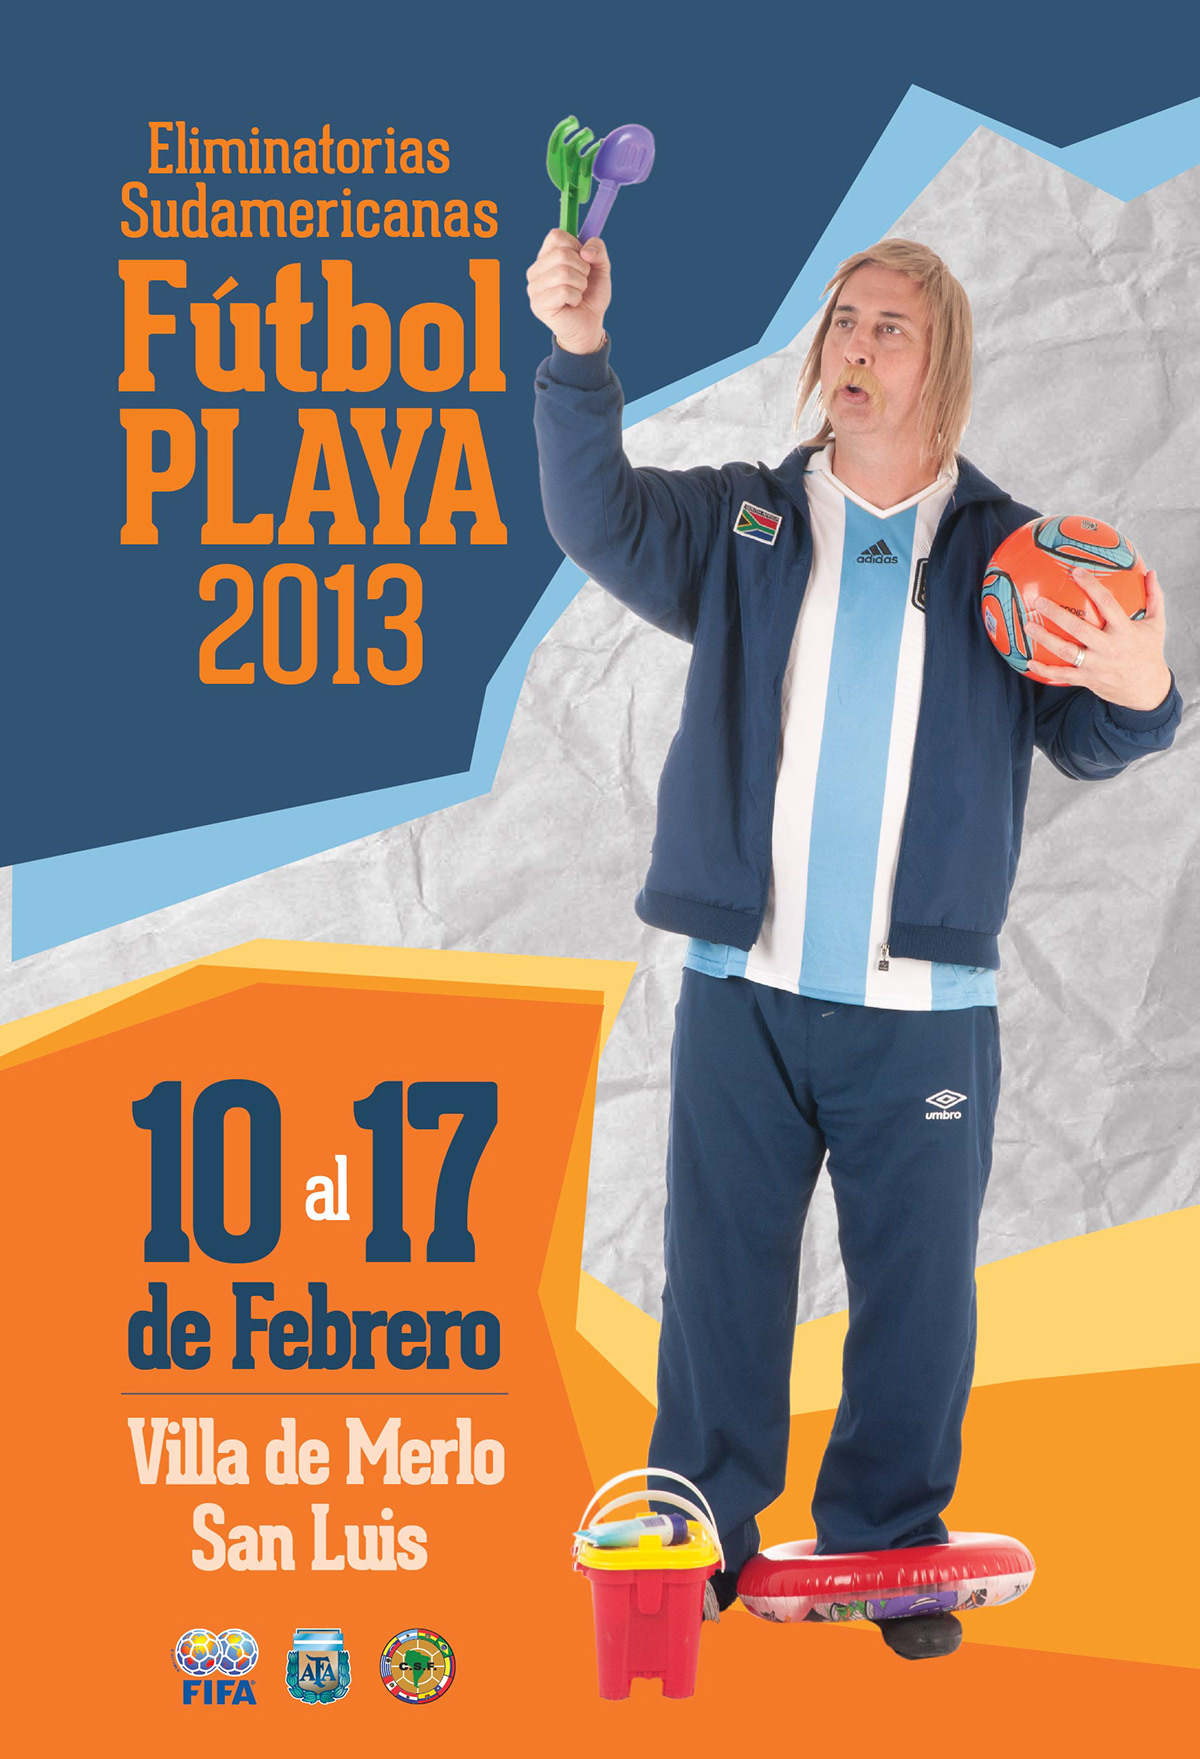 publicidad  gigantografía Eber Futbol playa  evento deportivo